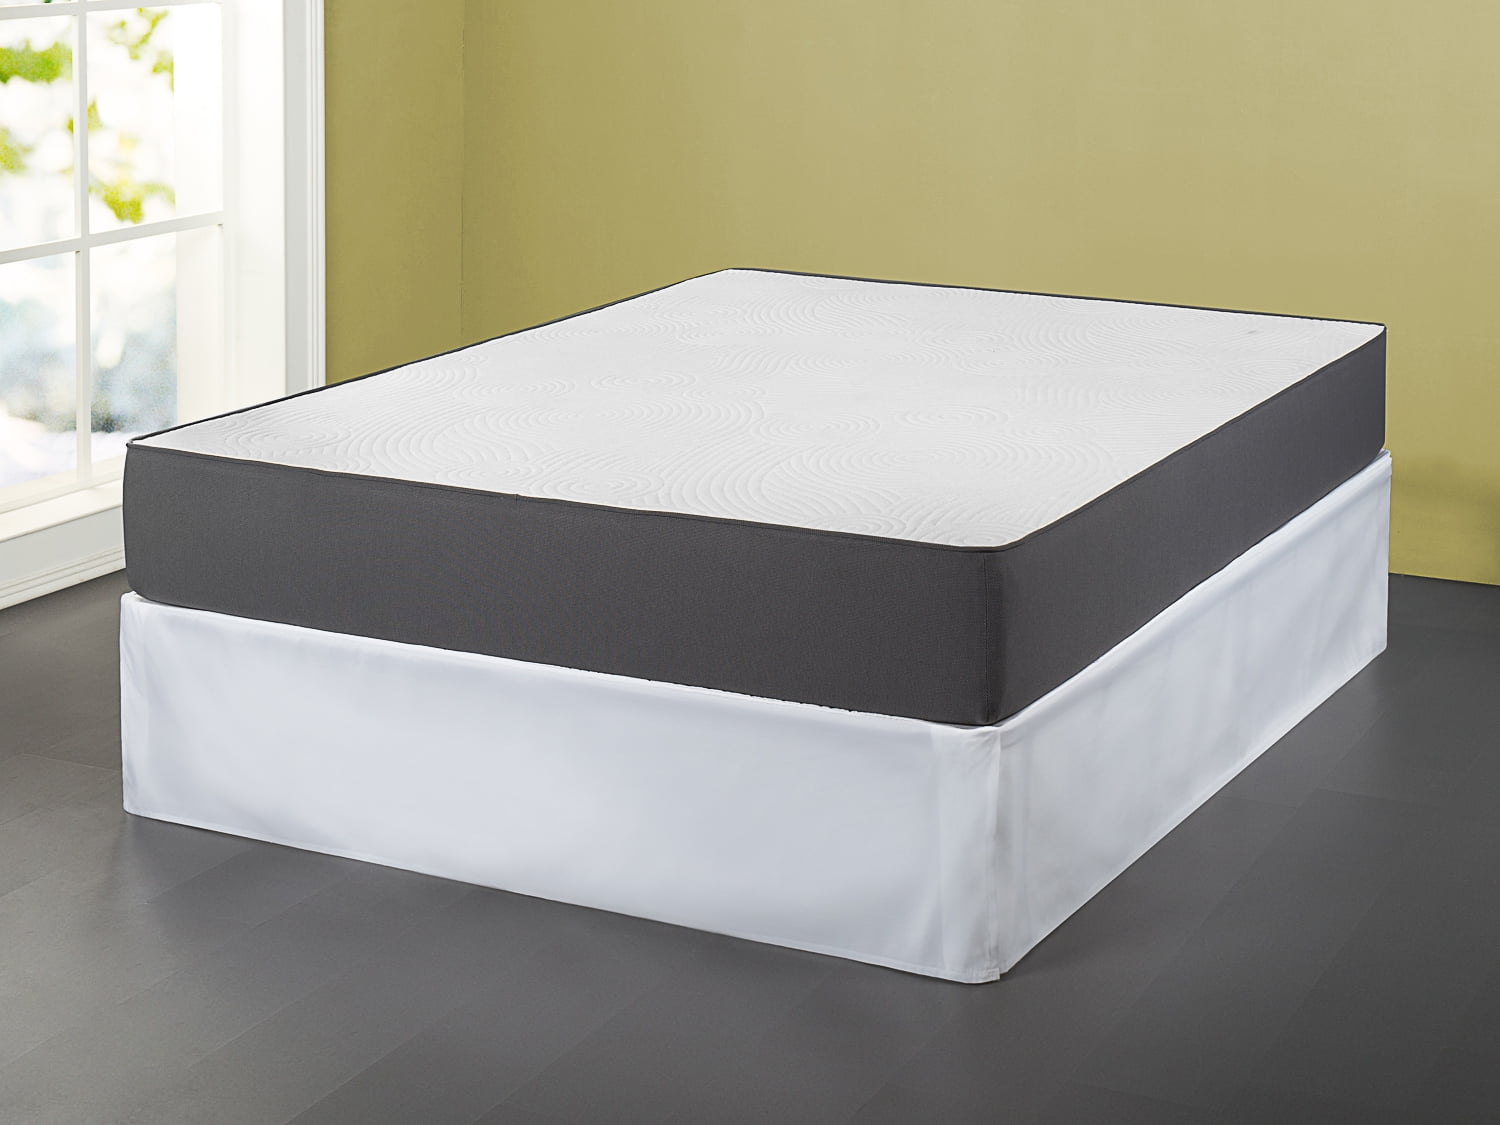 16 inch mattress price